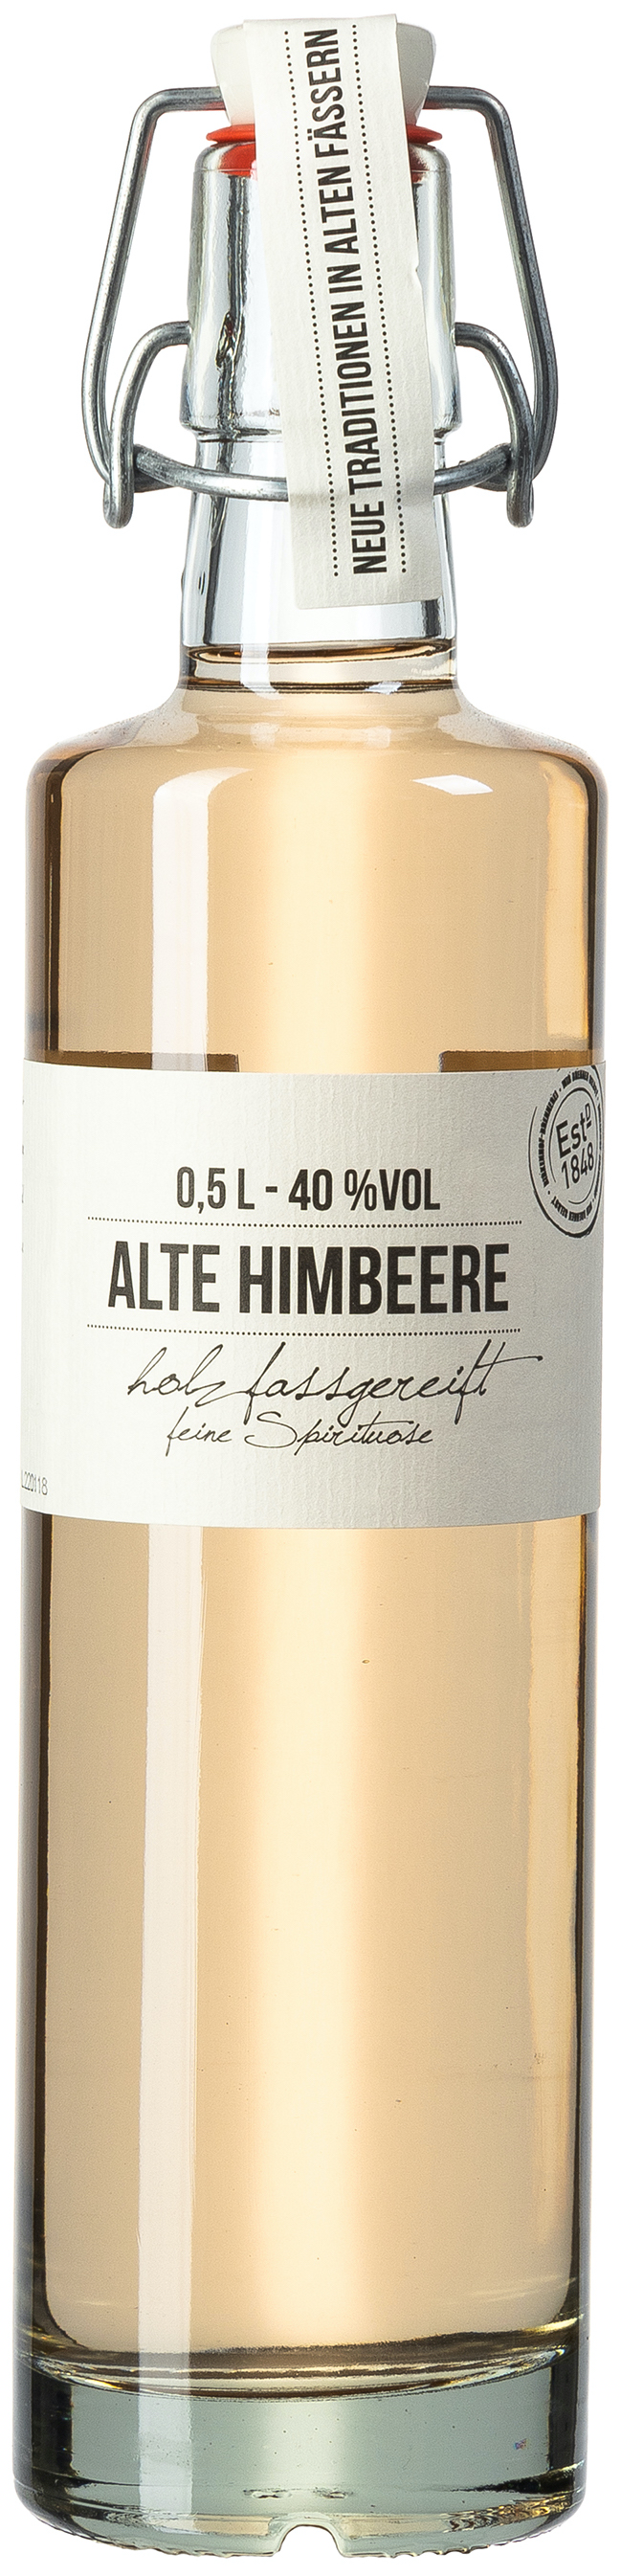 Birkenhof Alte Himbeere 40% vol. 0,5L